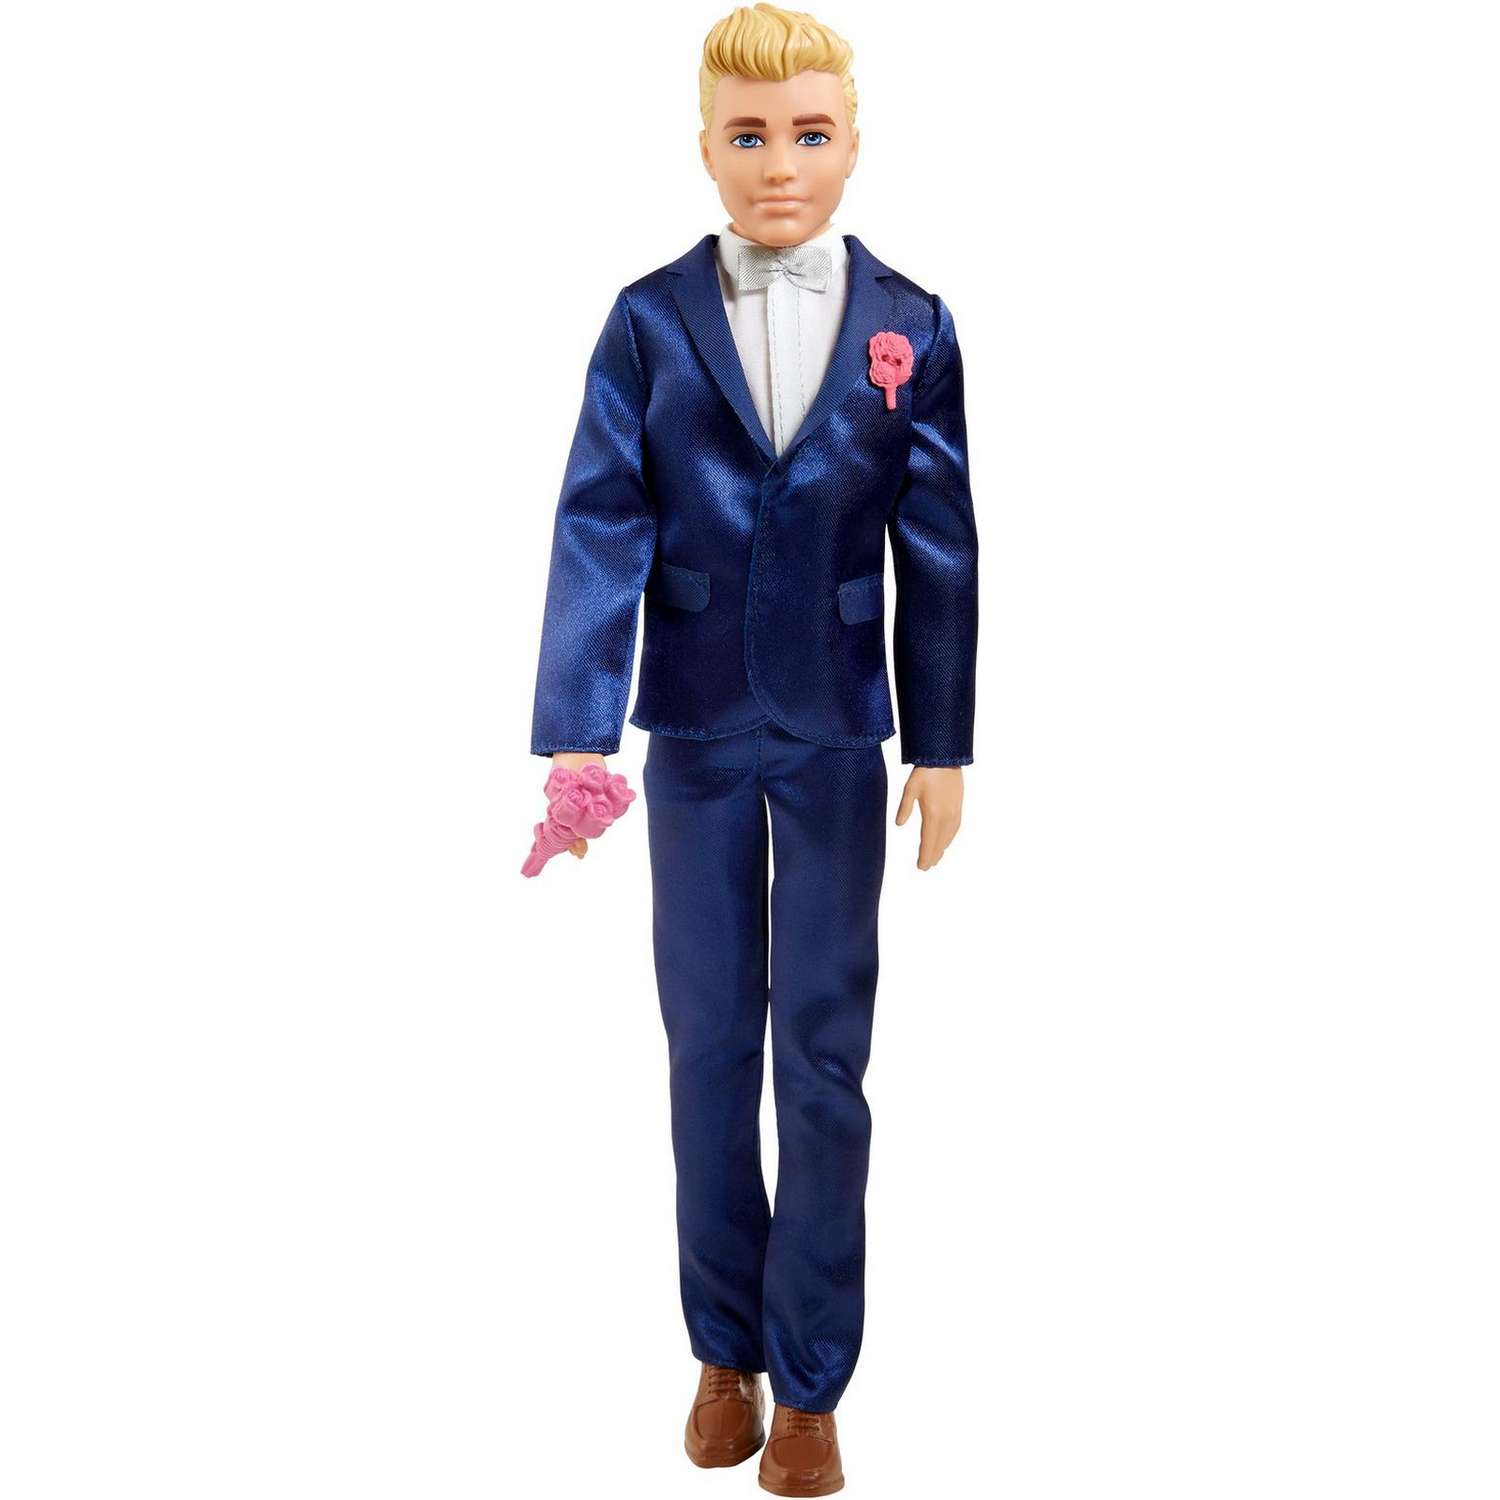 Кукла Barbie Кен Жених в свадебном костюме GTF36 GTF36 - фото 1